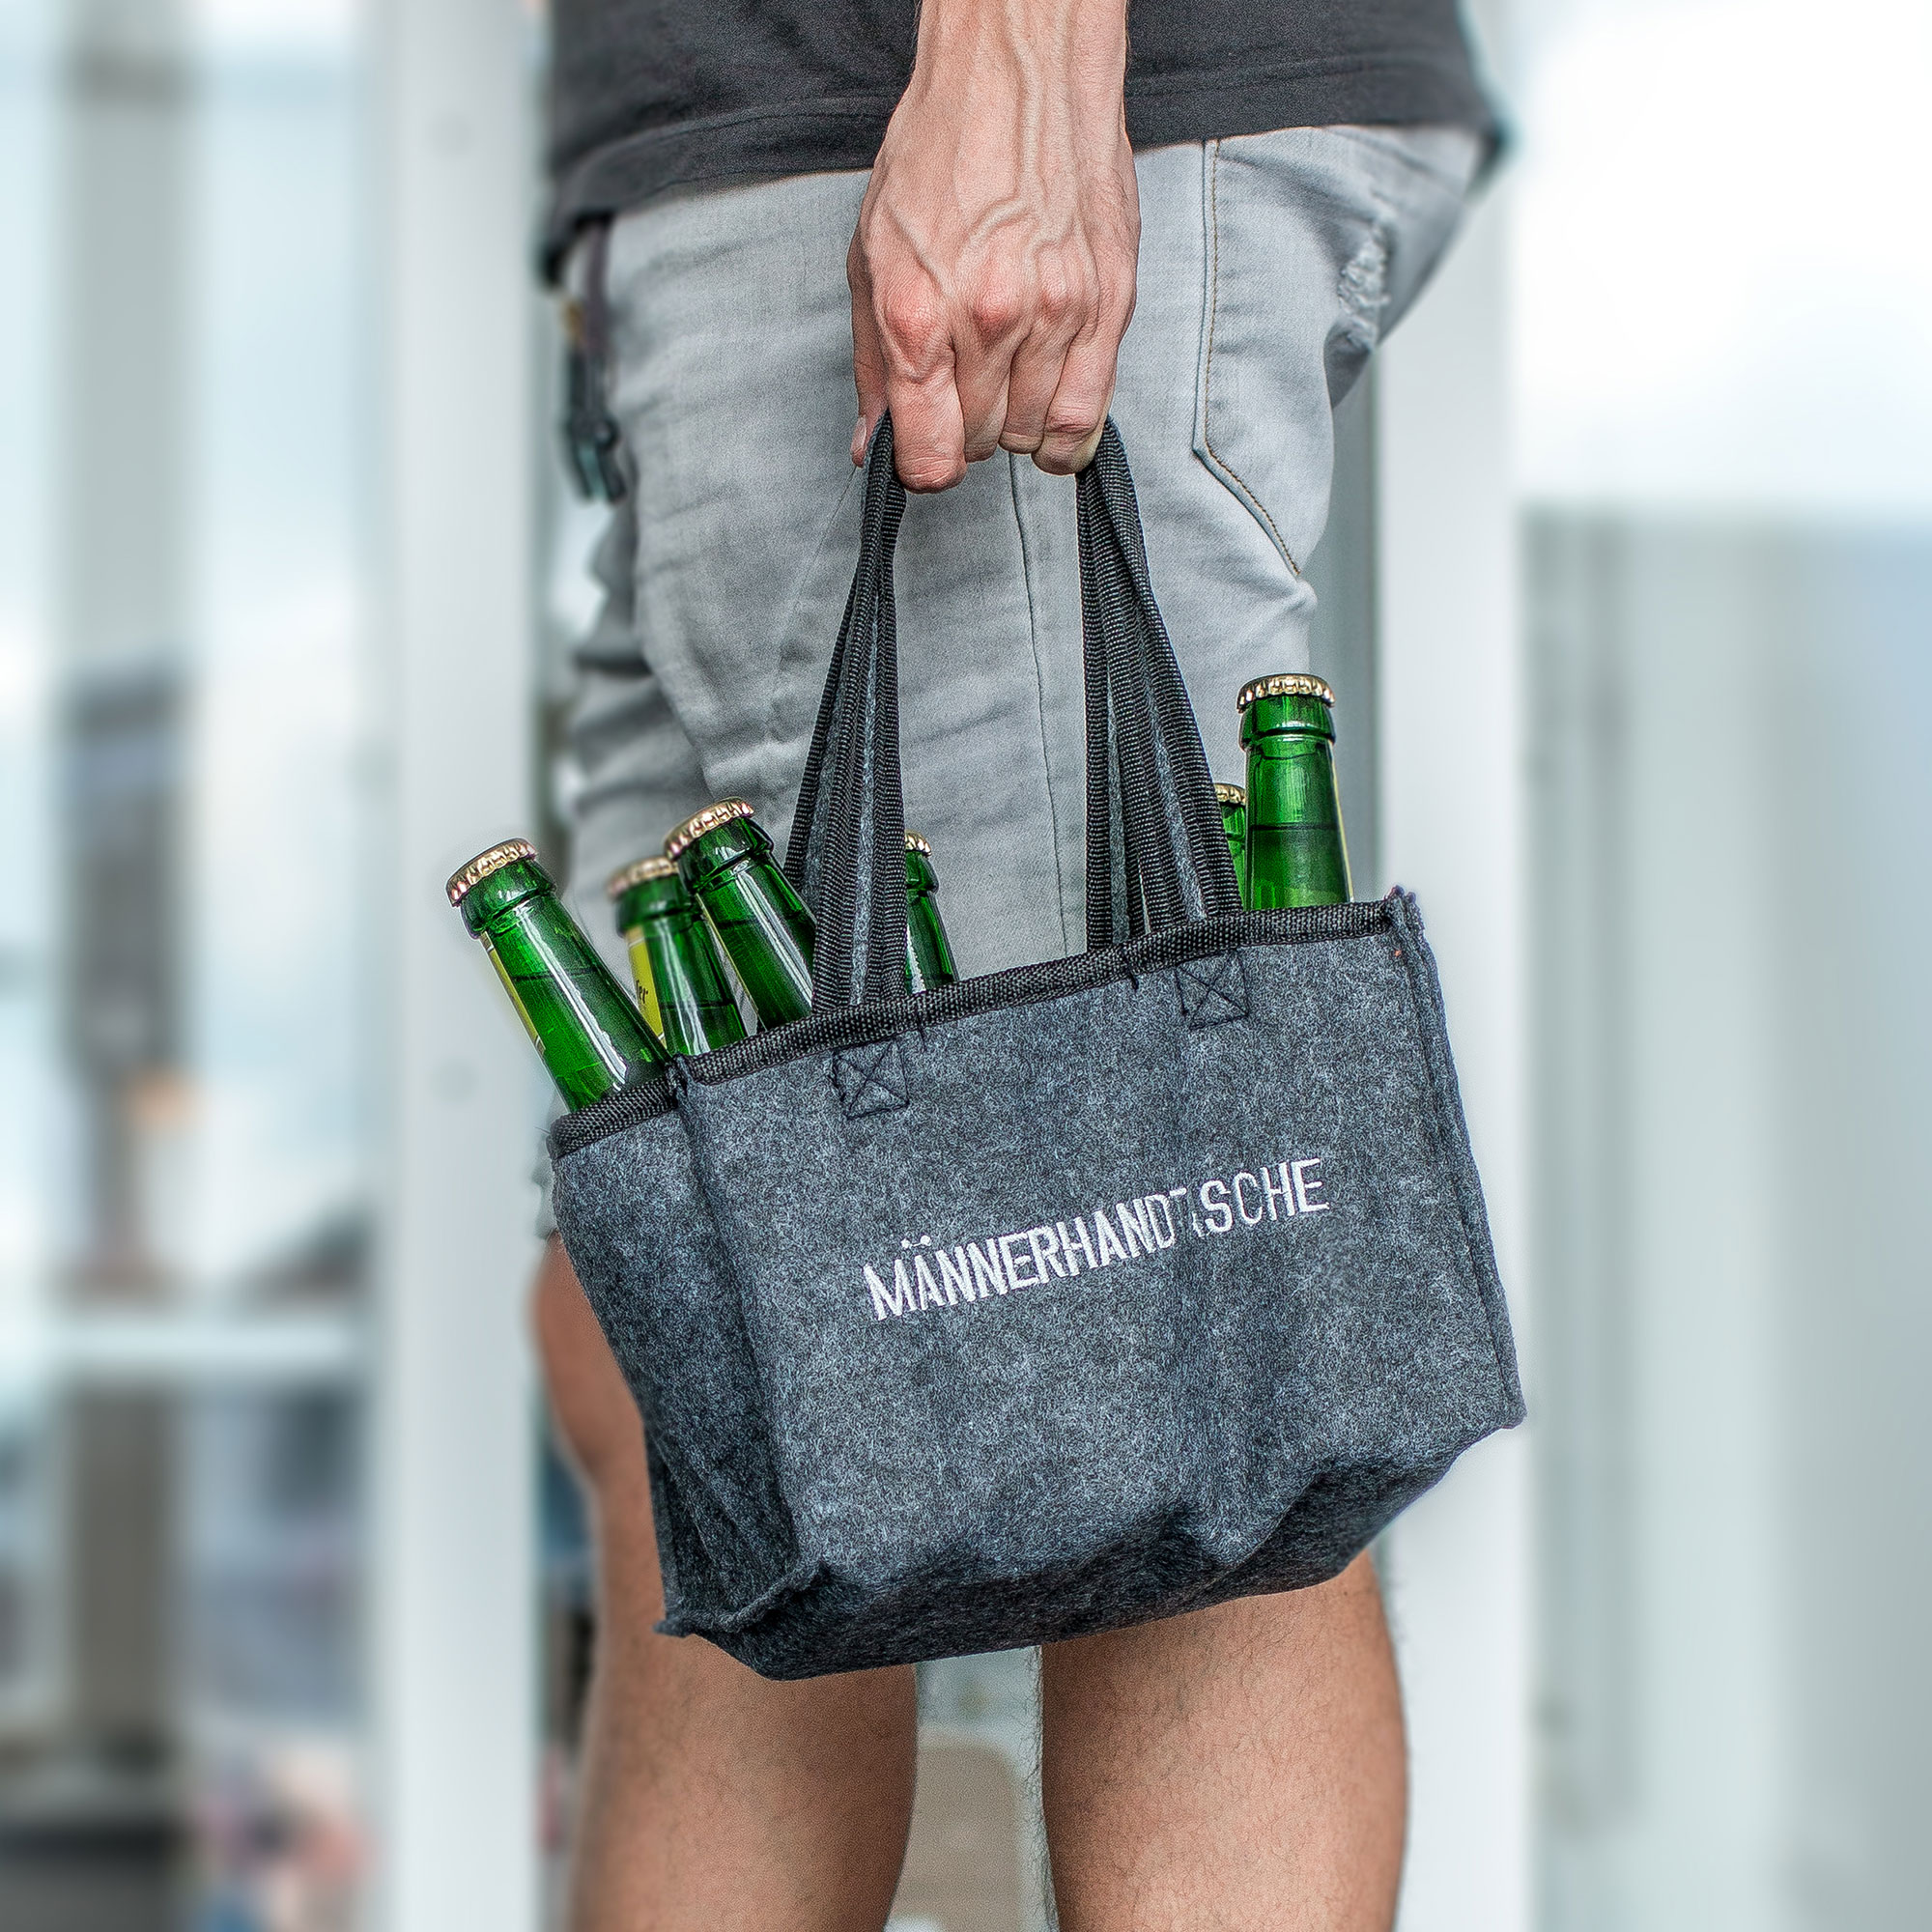 Männerhandtasche für Bier ? cooles Design!